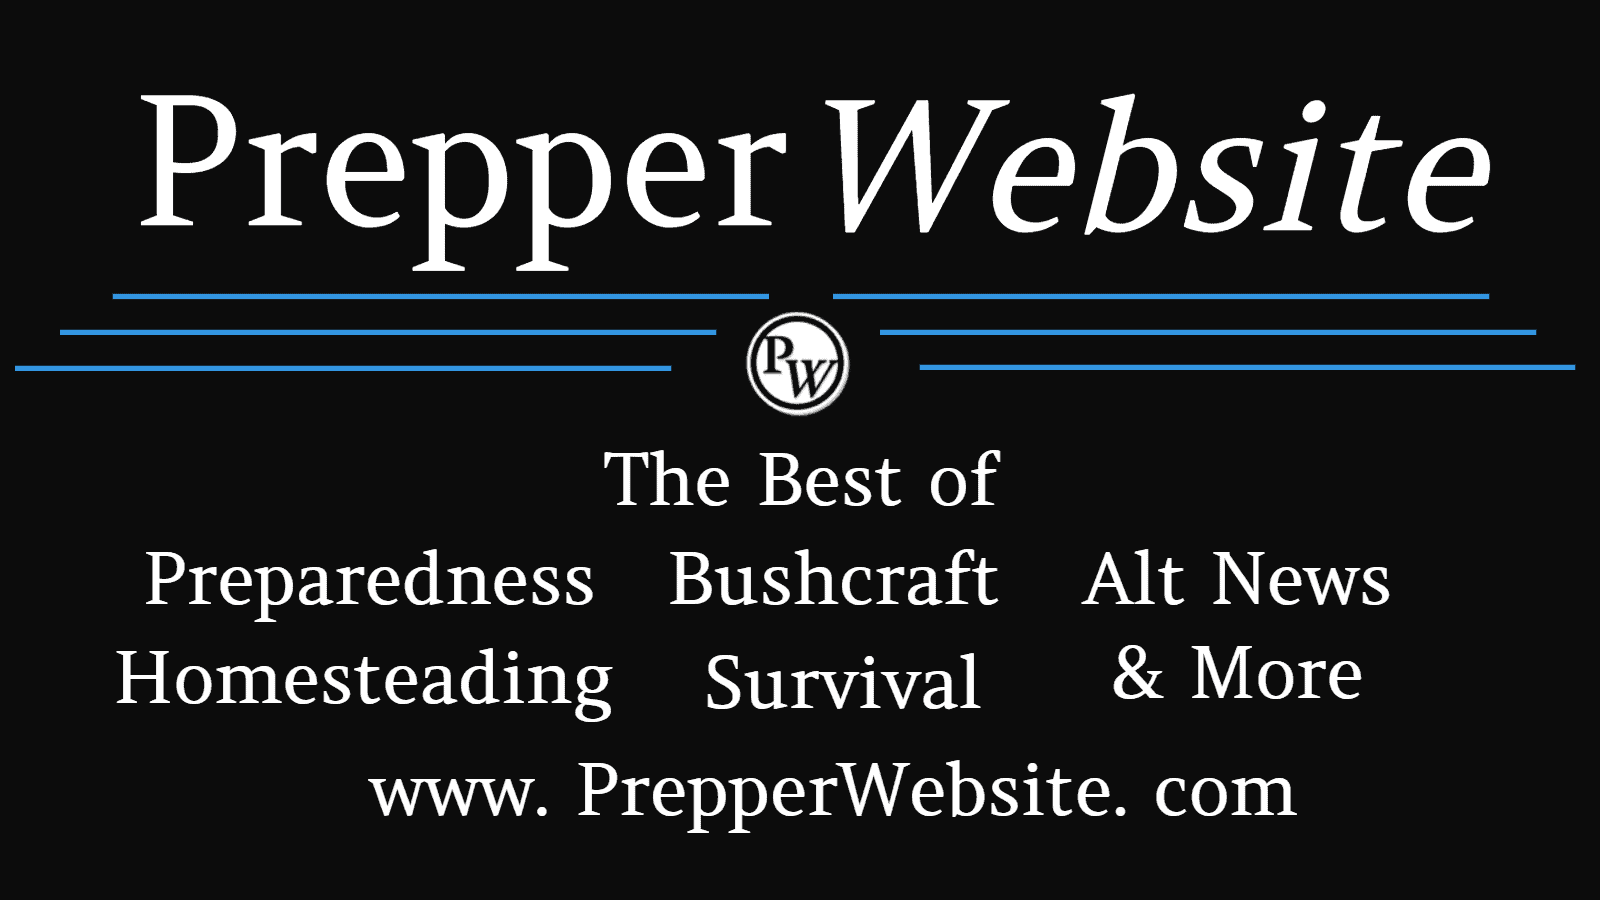 www.prepperwebsite.com